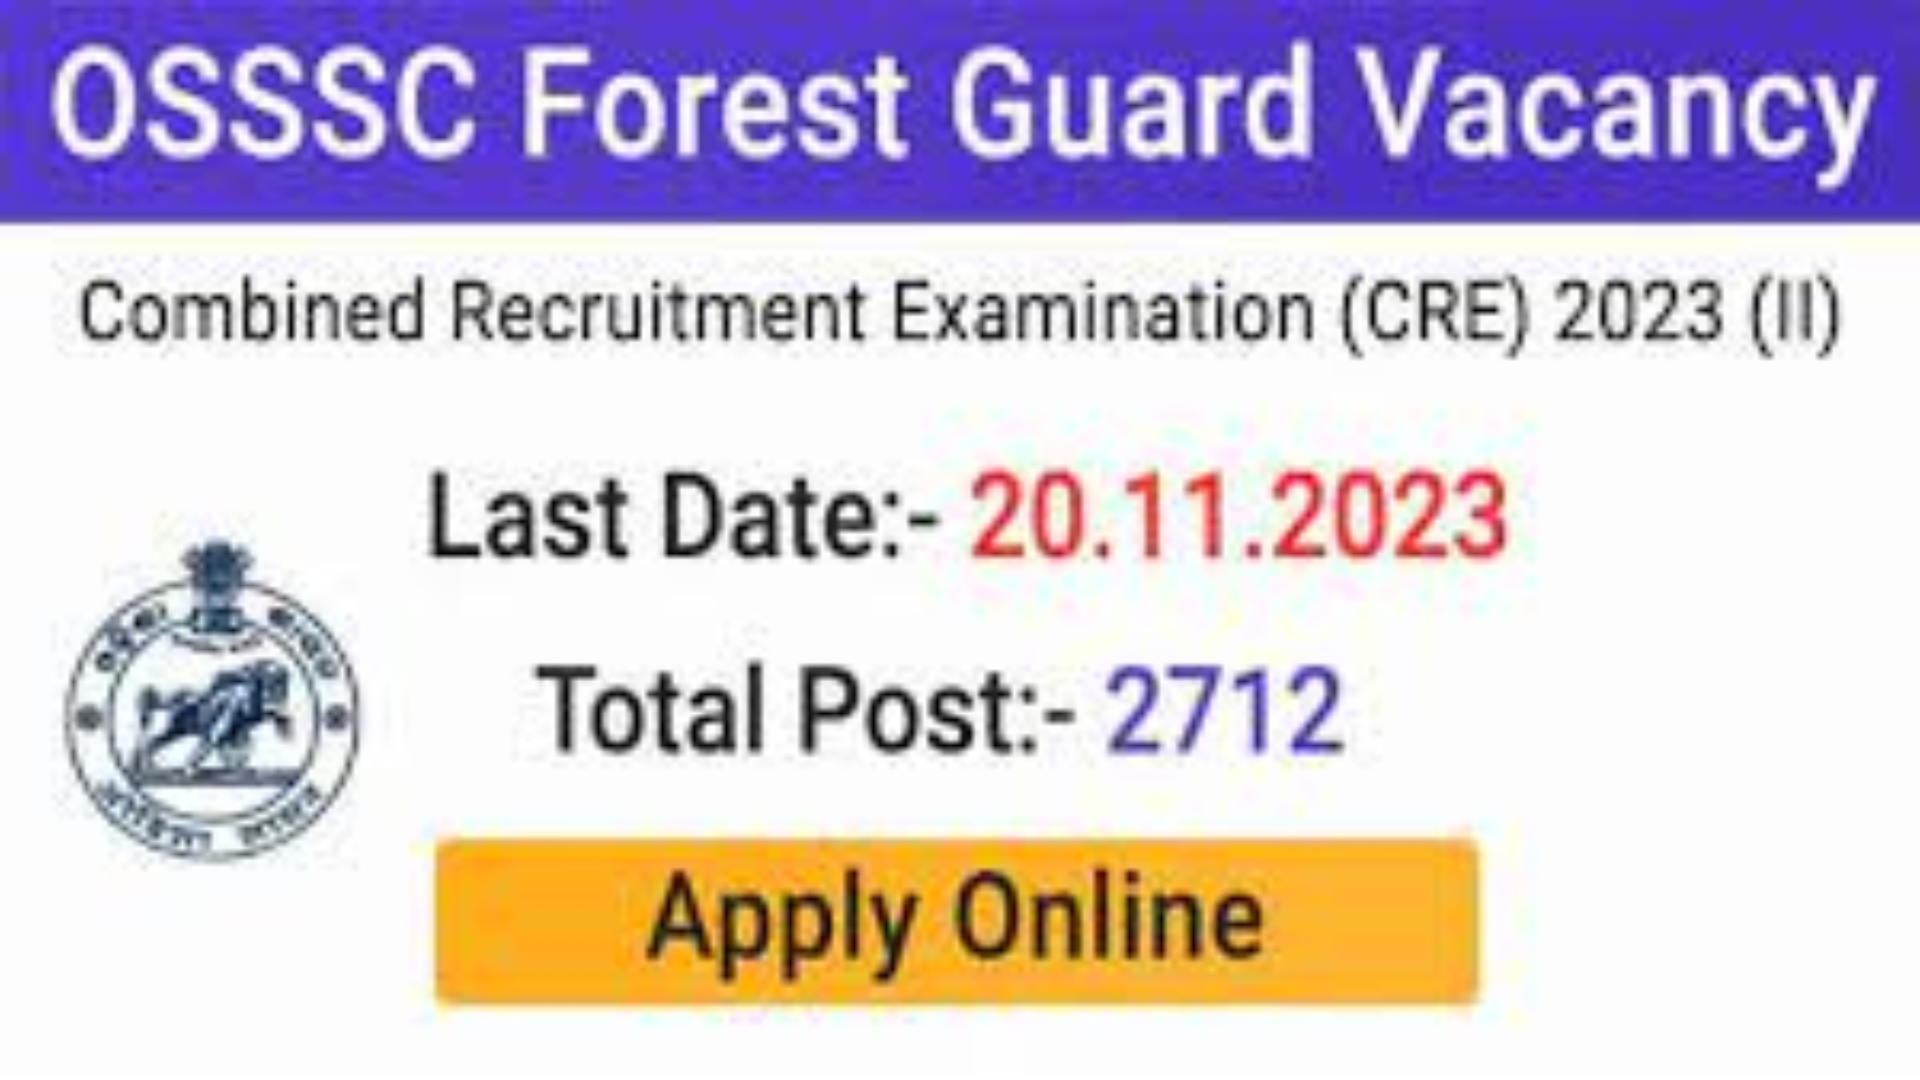 OSSSC Forest Guard Recruitment 2023 Notification, Apply Online